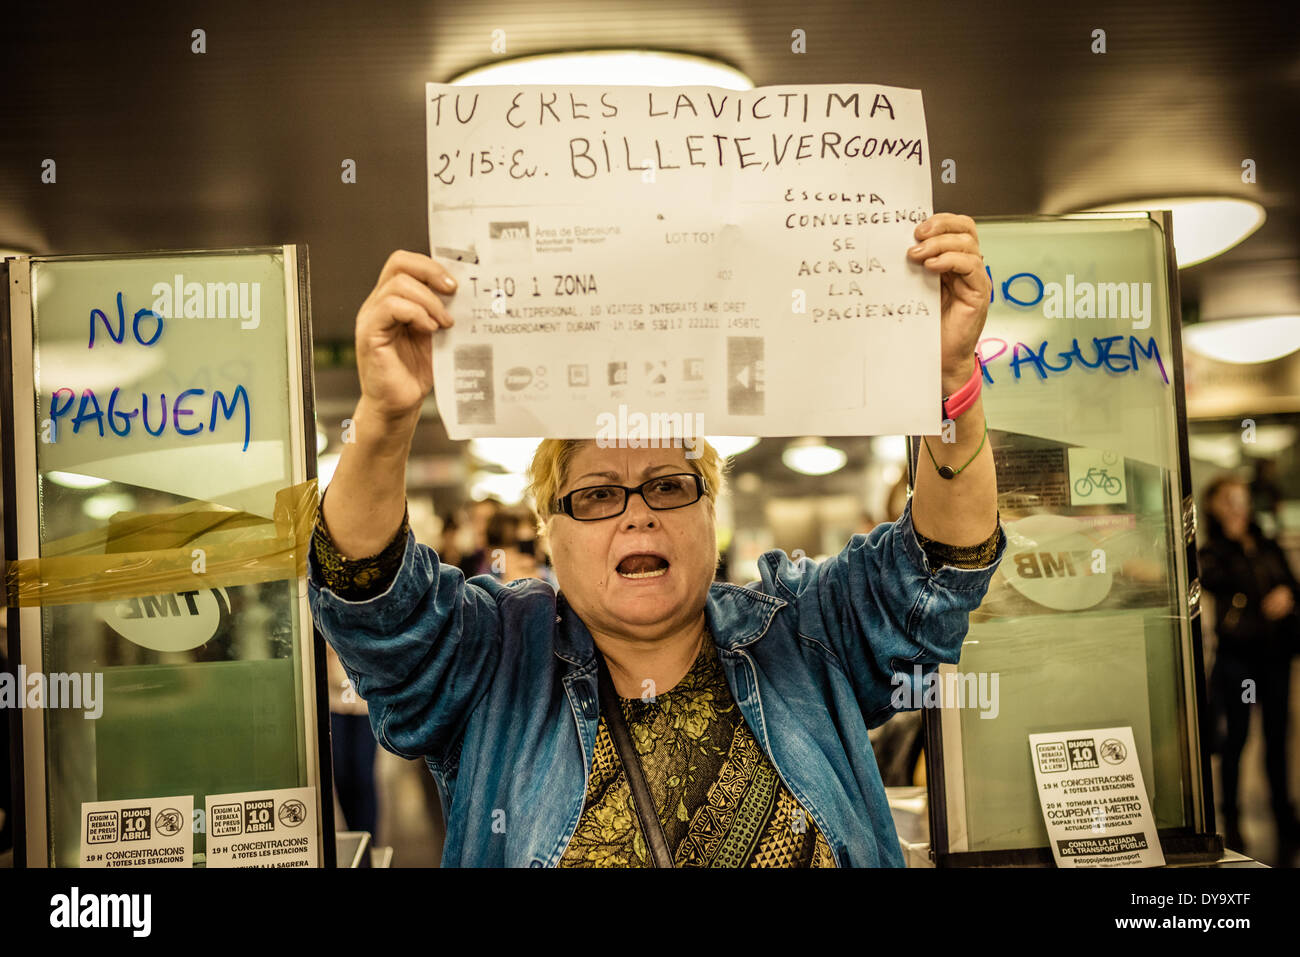 Barcelone, Espagne. 10 avril 2014 : Un militant tient son placard pendant une manifestation contre le faux billet pour les transports publics de Barcelone : Crédit matthi/Alamy Live News Banque D'Images